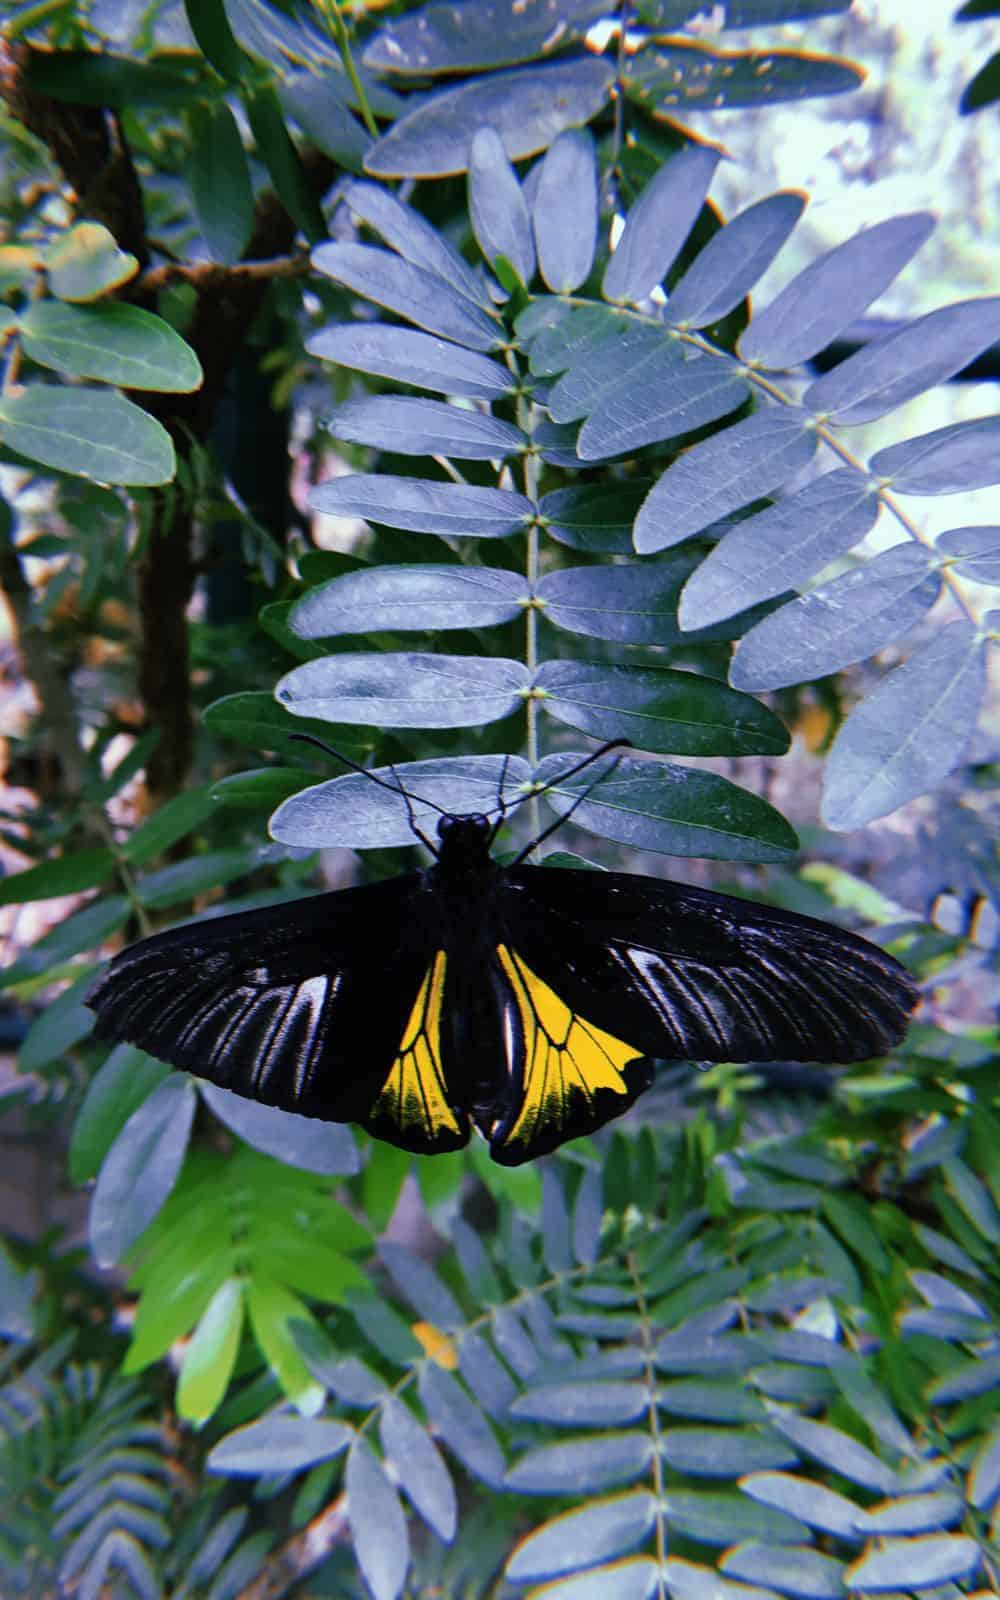  10 significations spirituelles du papillon jaune et noir